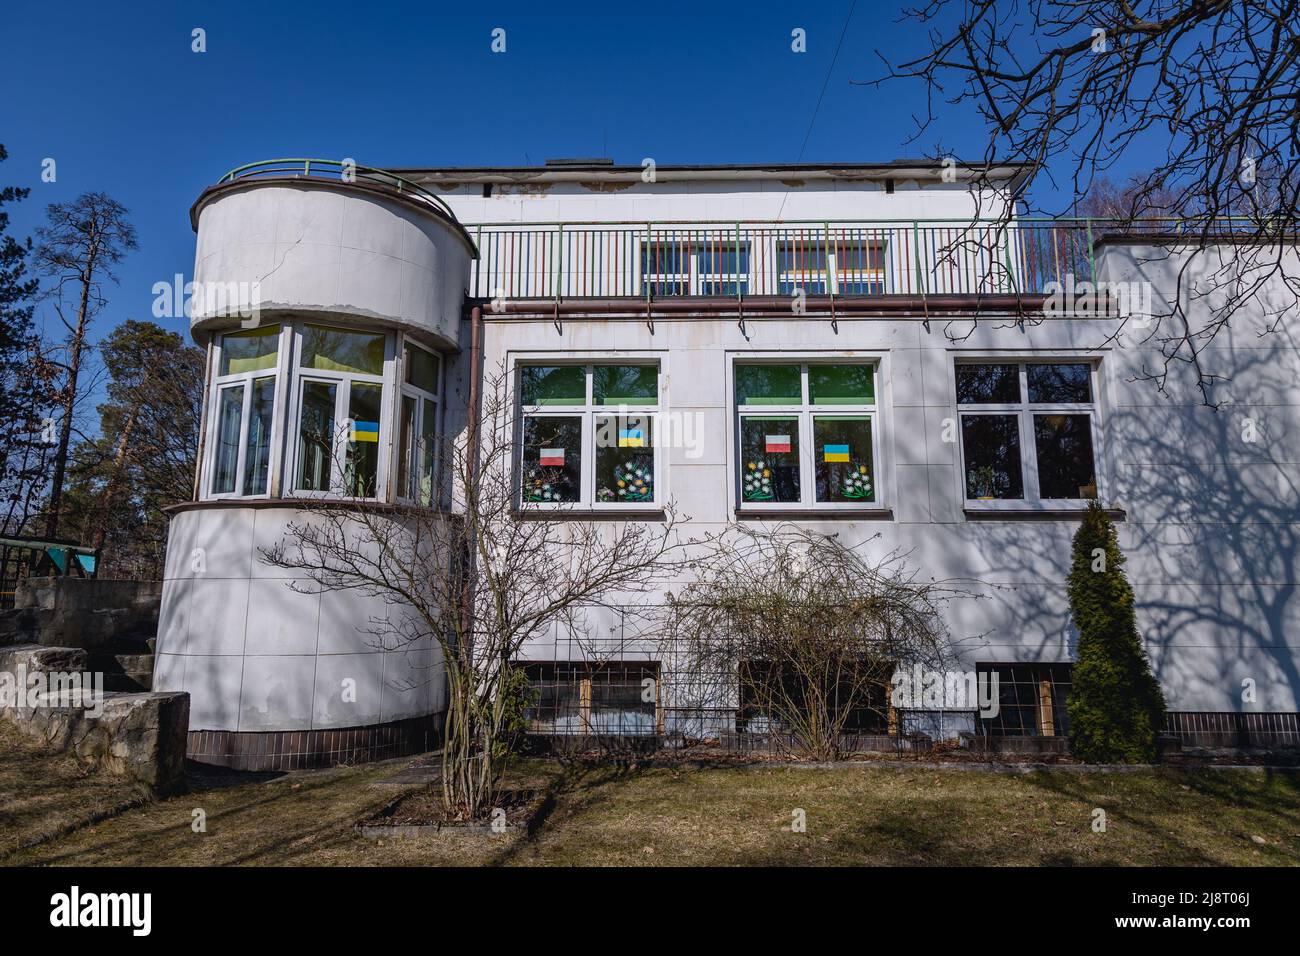 Stile modernista la cosiddetta Villa Bianca chiamata anche Paulusowka accanto alla fabbrica di munizioni nella città di Nowa Deba nella Voivodata Subcarpathiana della Polonia Foto Stock